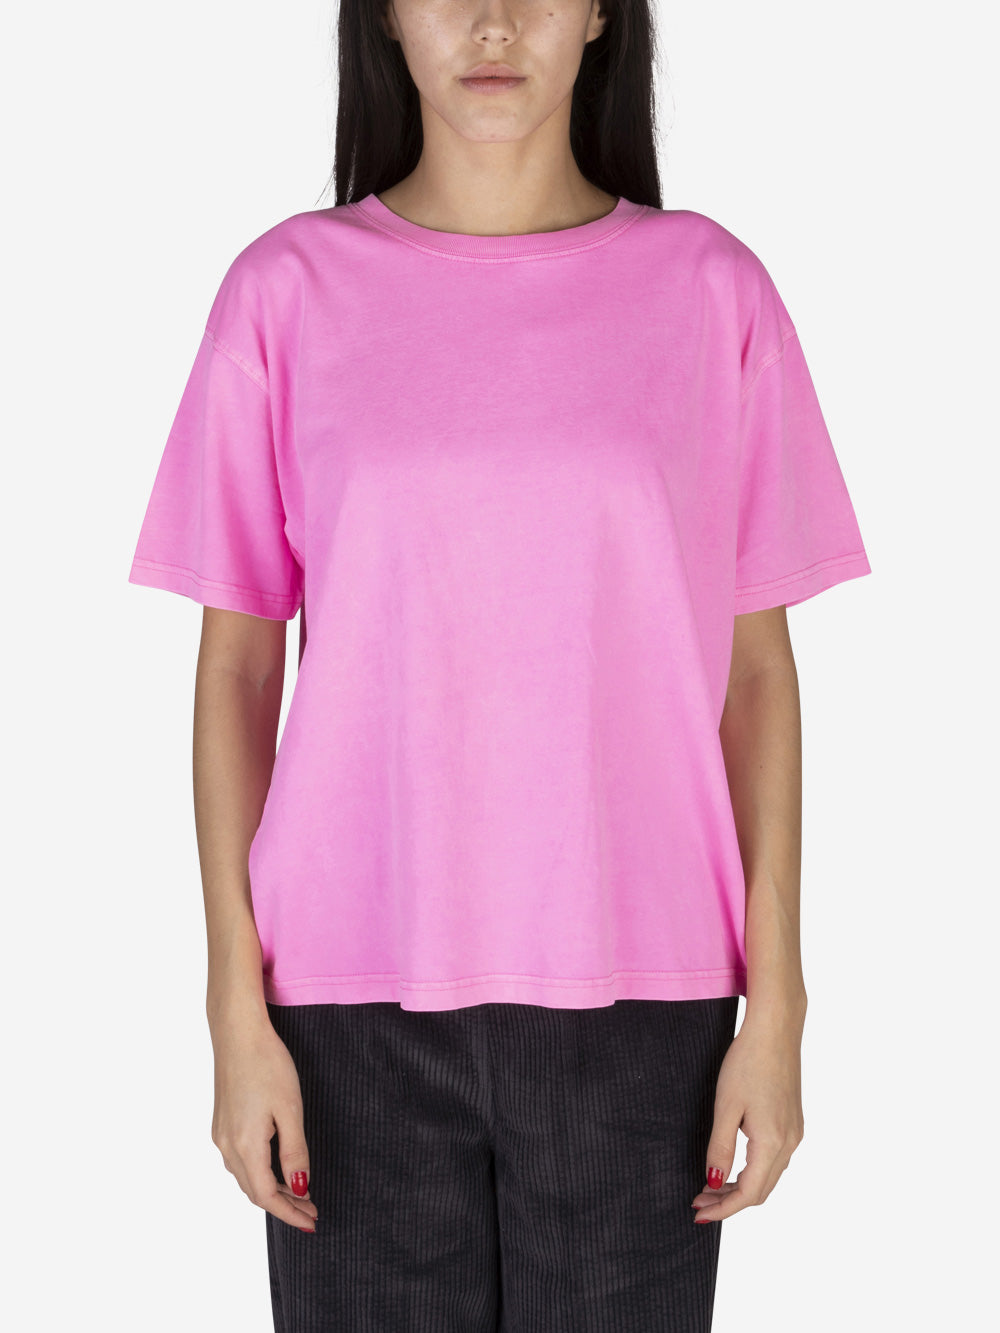 AMERICAN VINTAGE T-shirt Fizvalley rosa Rosa Urbanstaroma